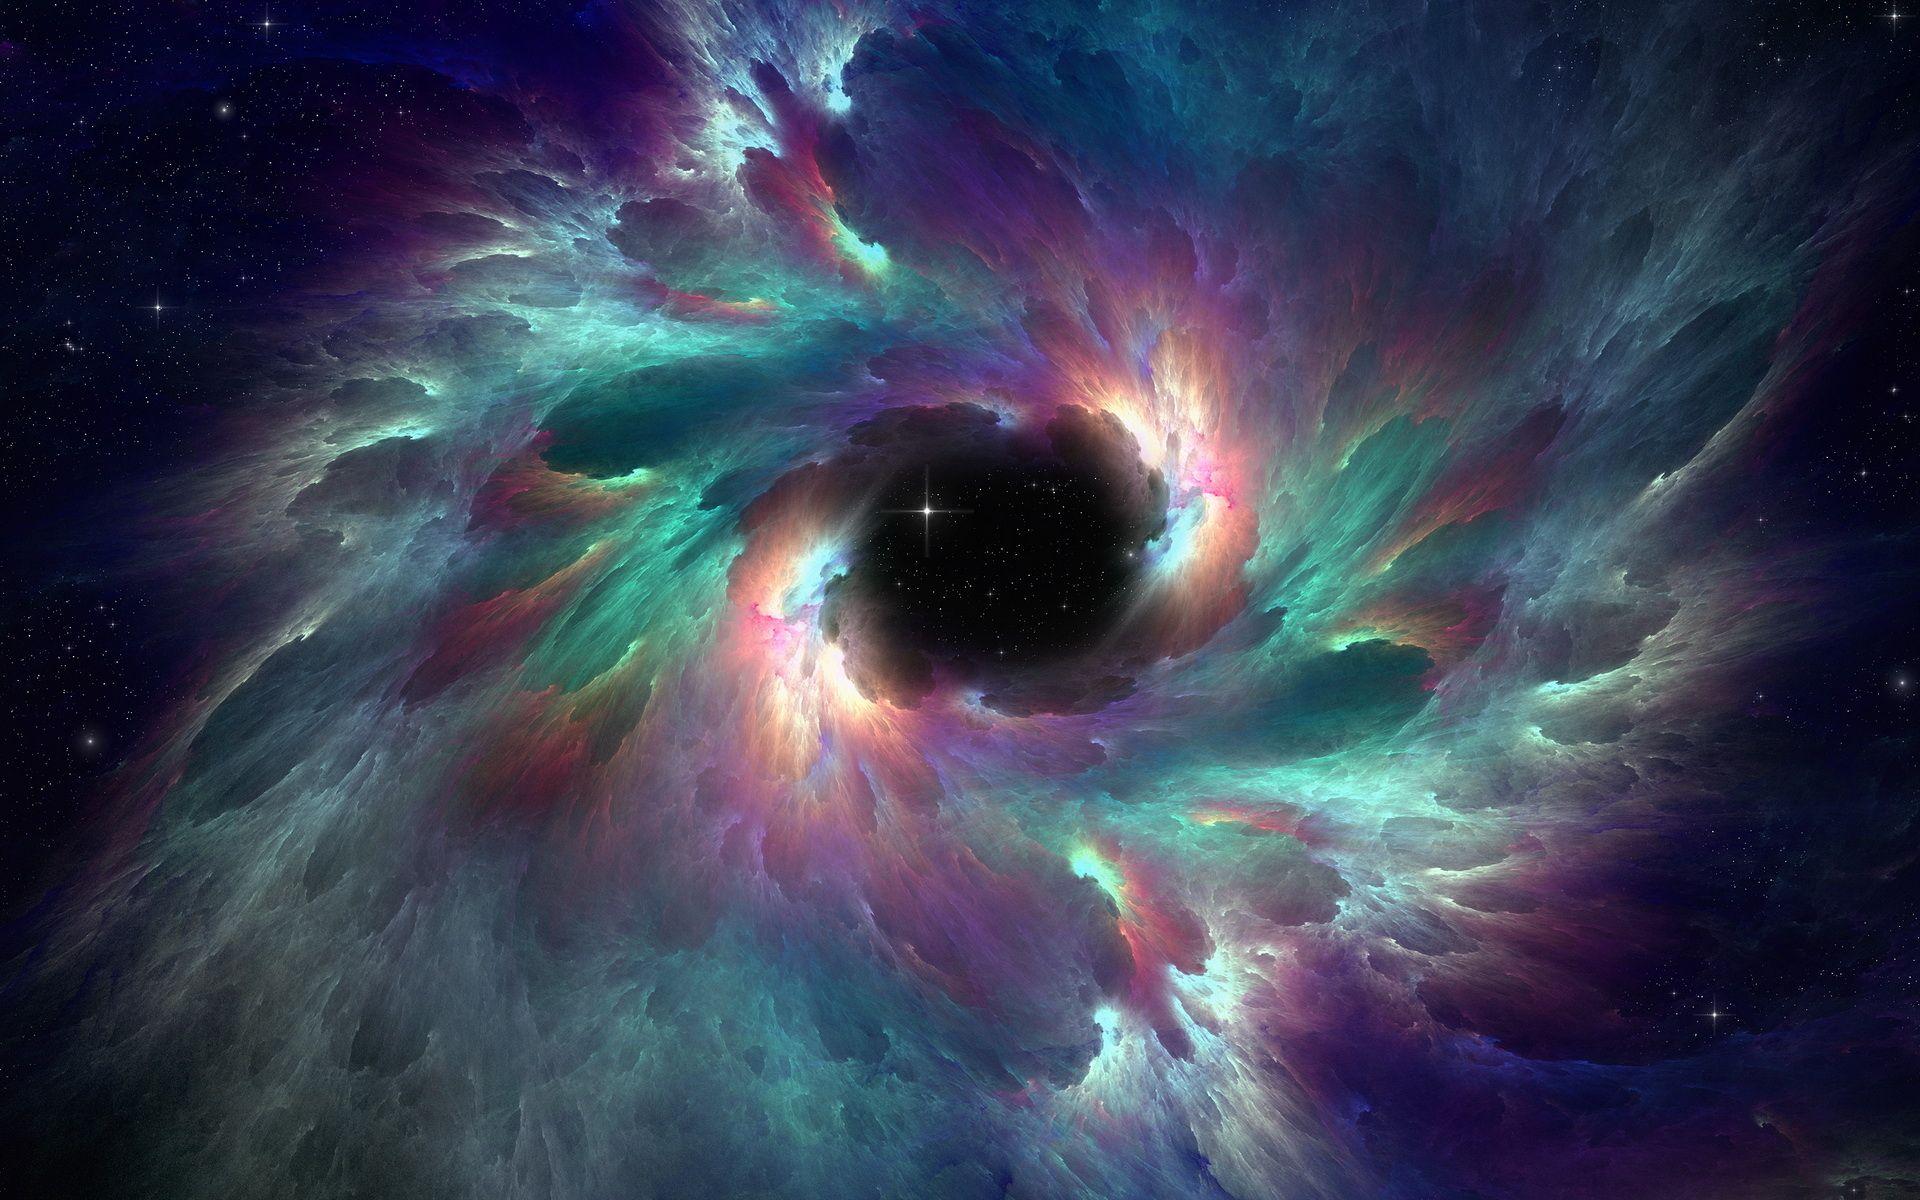 desktop backgrounds space nebula